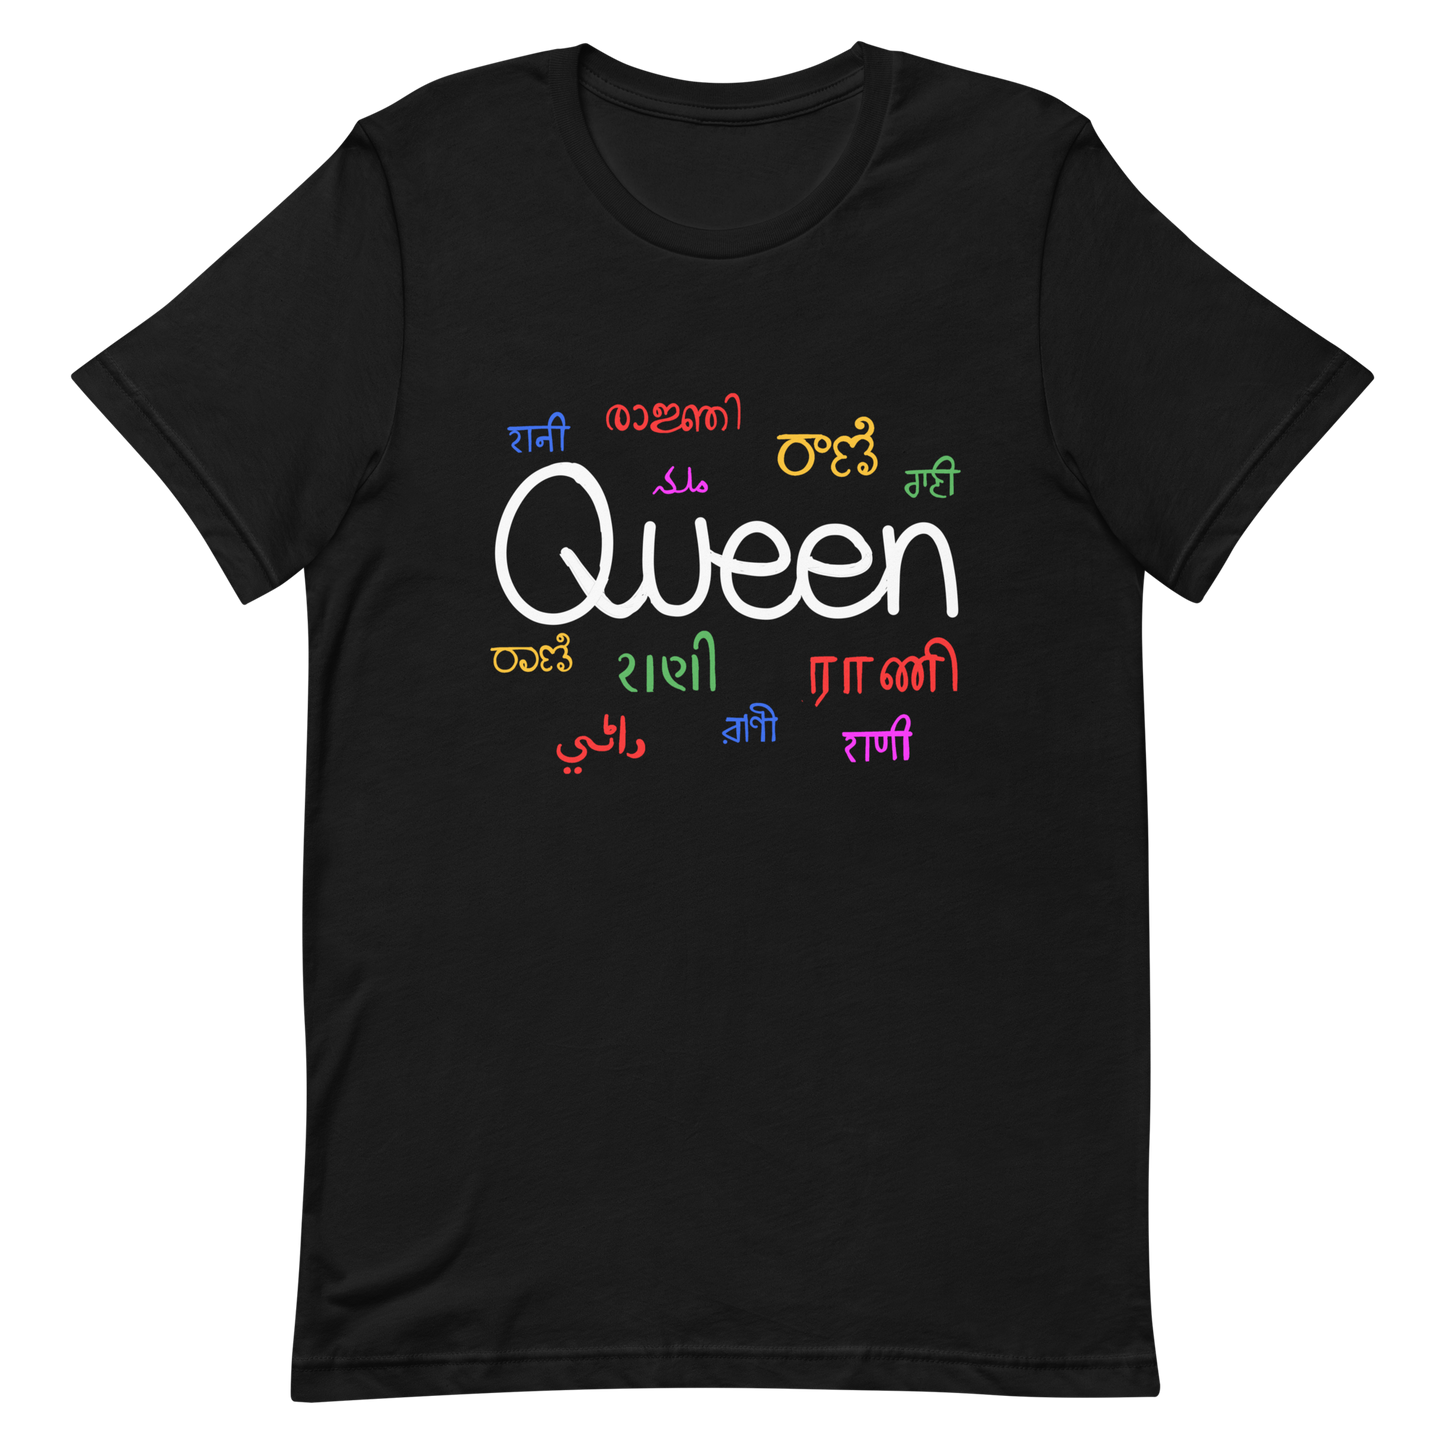 Queen - Short-Sleeve Unisex T-Shirt